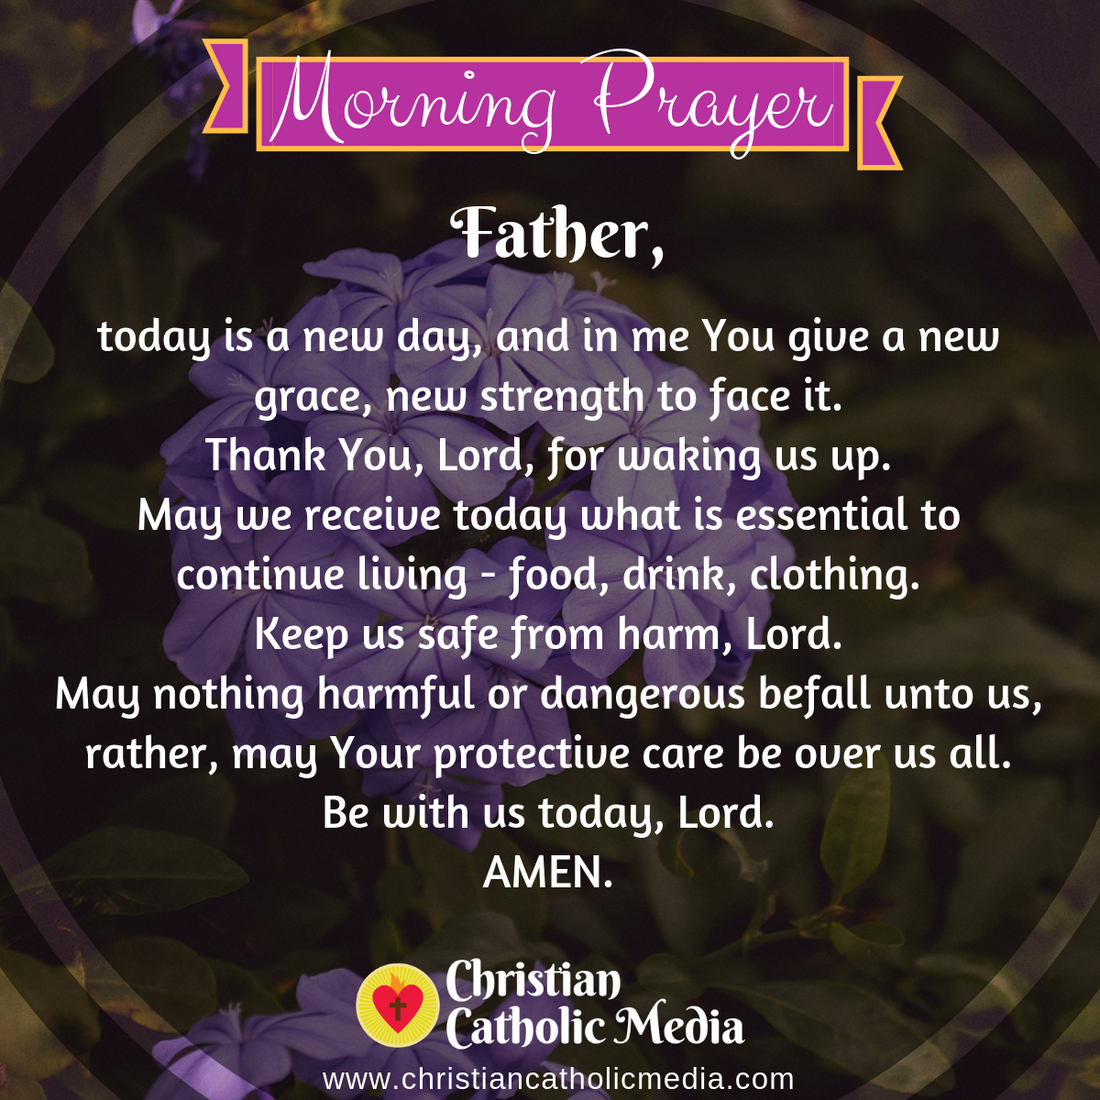 Morning Prayer Catholic Tuesday 12-10-2019